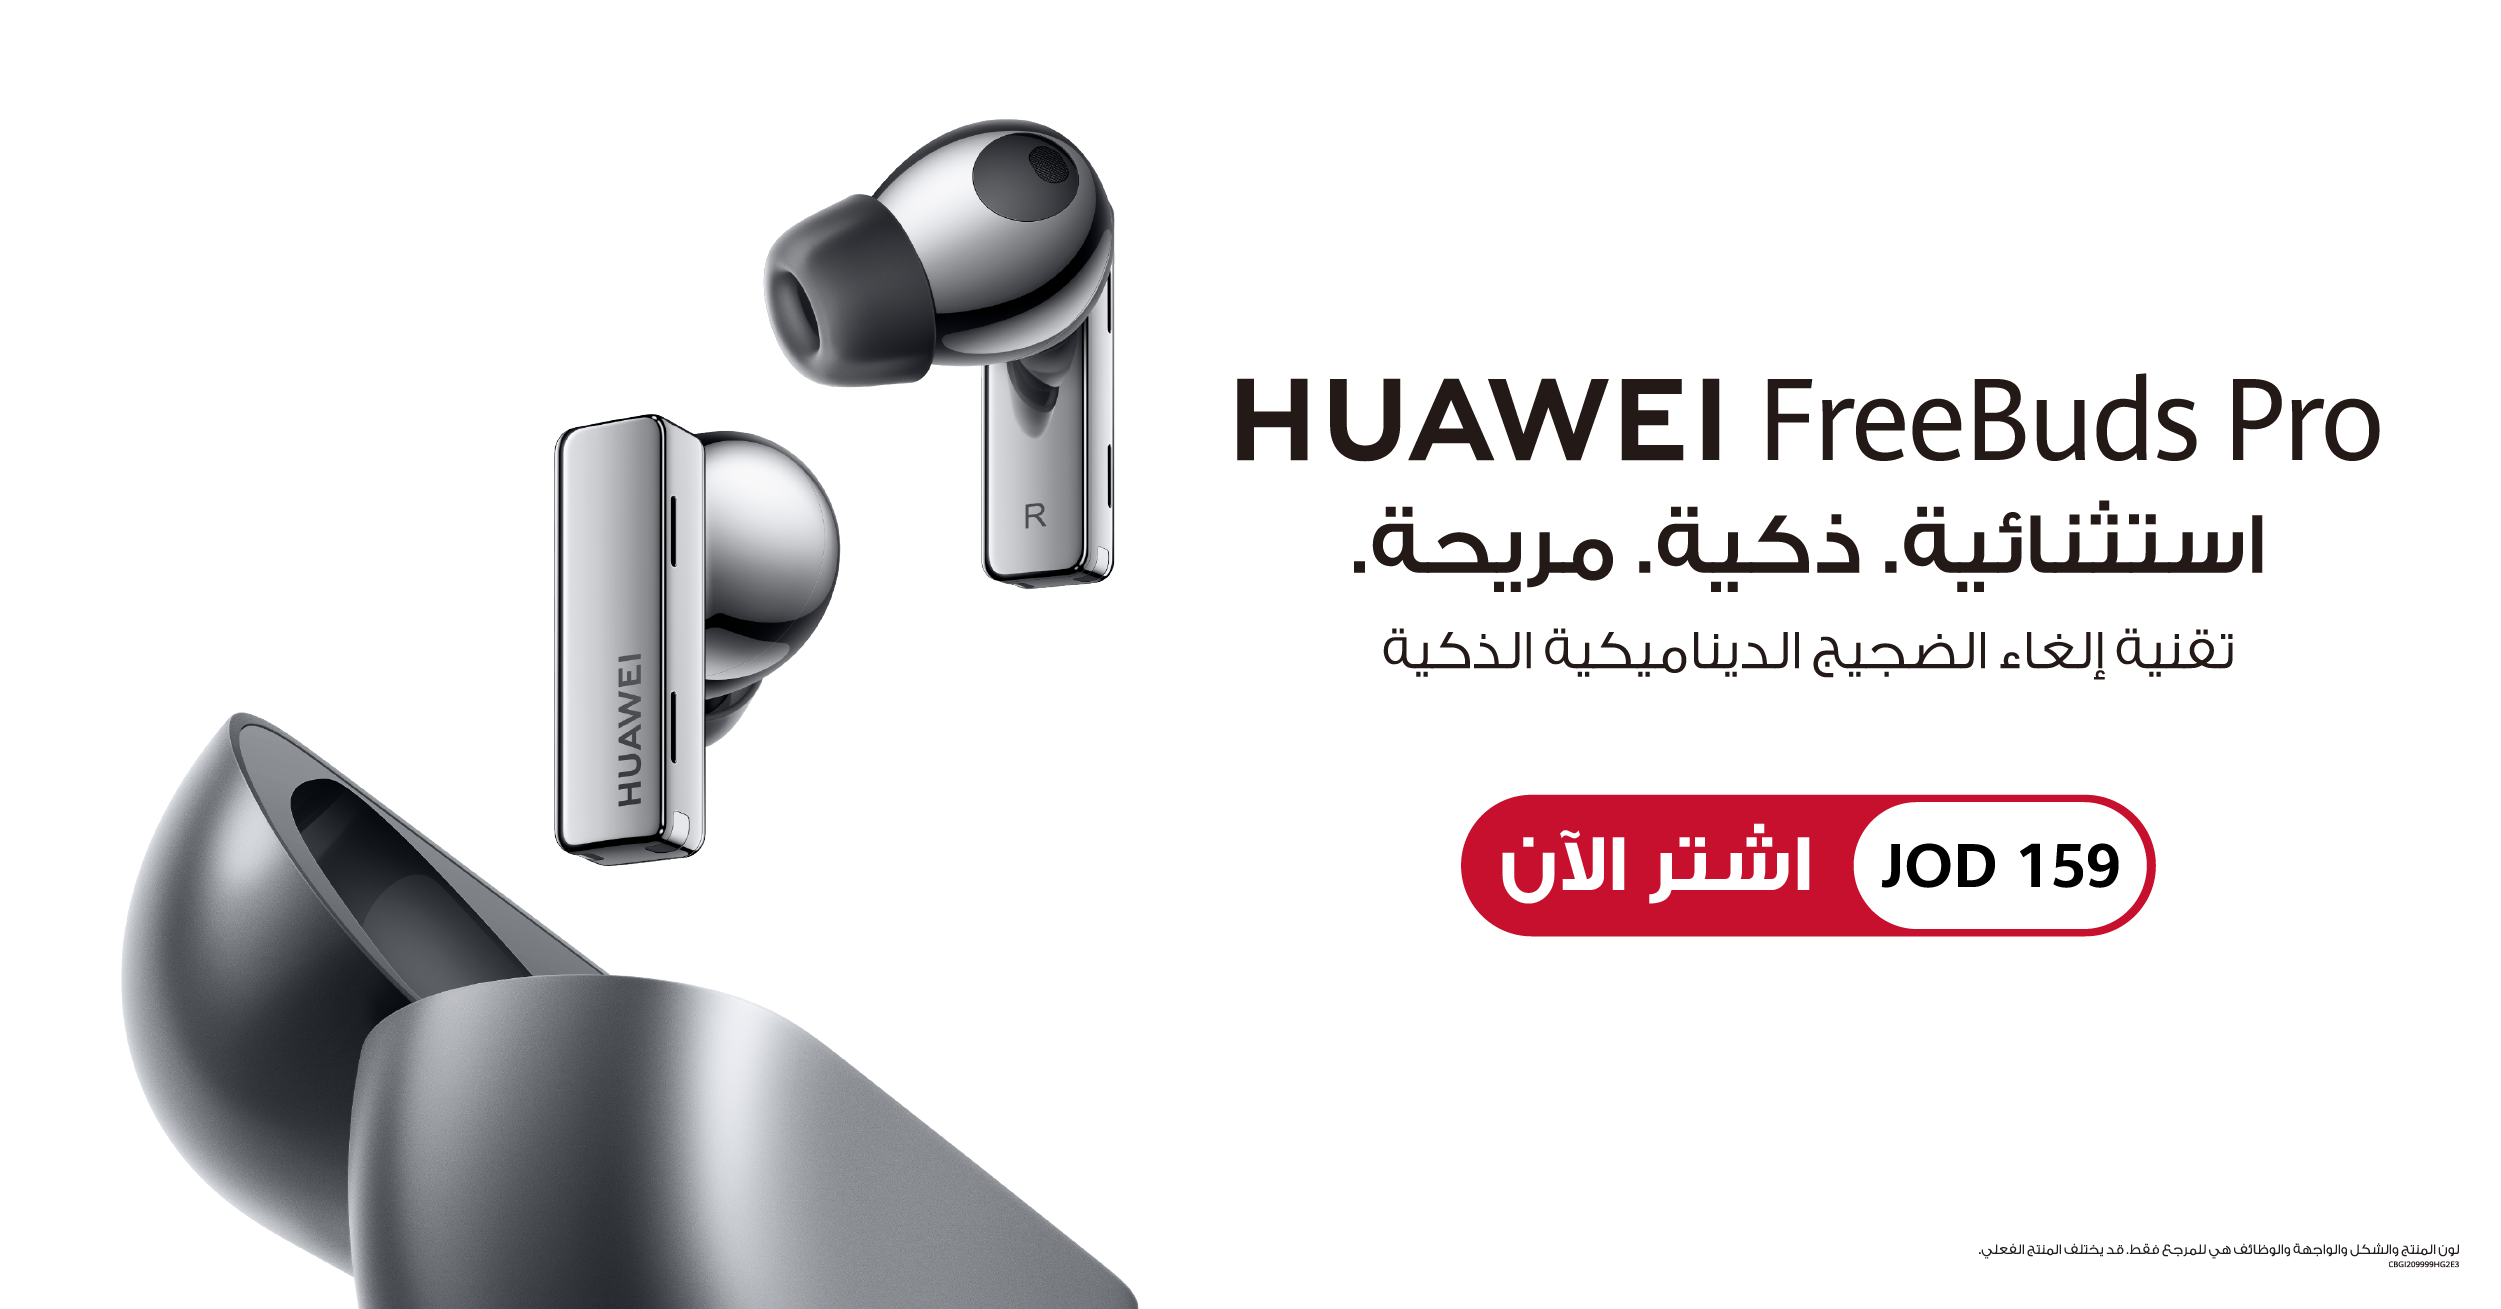 أيقونية ..  ذكية ..  مريحة ..  إعادة تعريف إلغاء الضوضاء الديناميكي مع أول سماعات أذن ستيريو لاسلكية حقيقية في العالم  هواوي تطلق سماعات Huawei FreeBuds Pro في الأردن